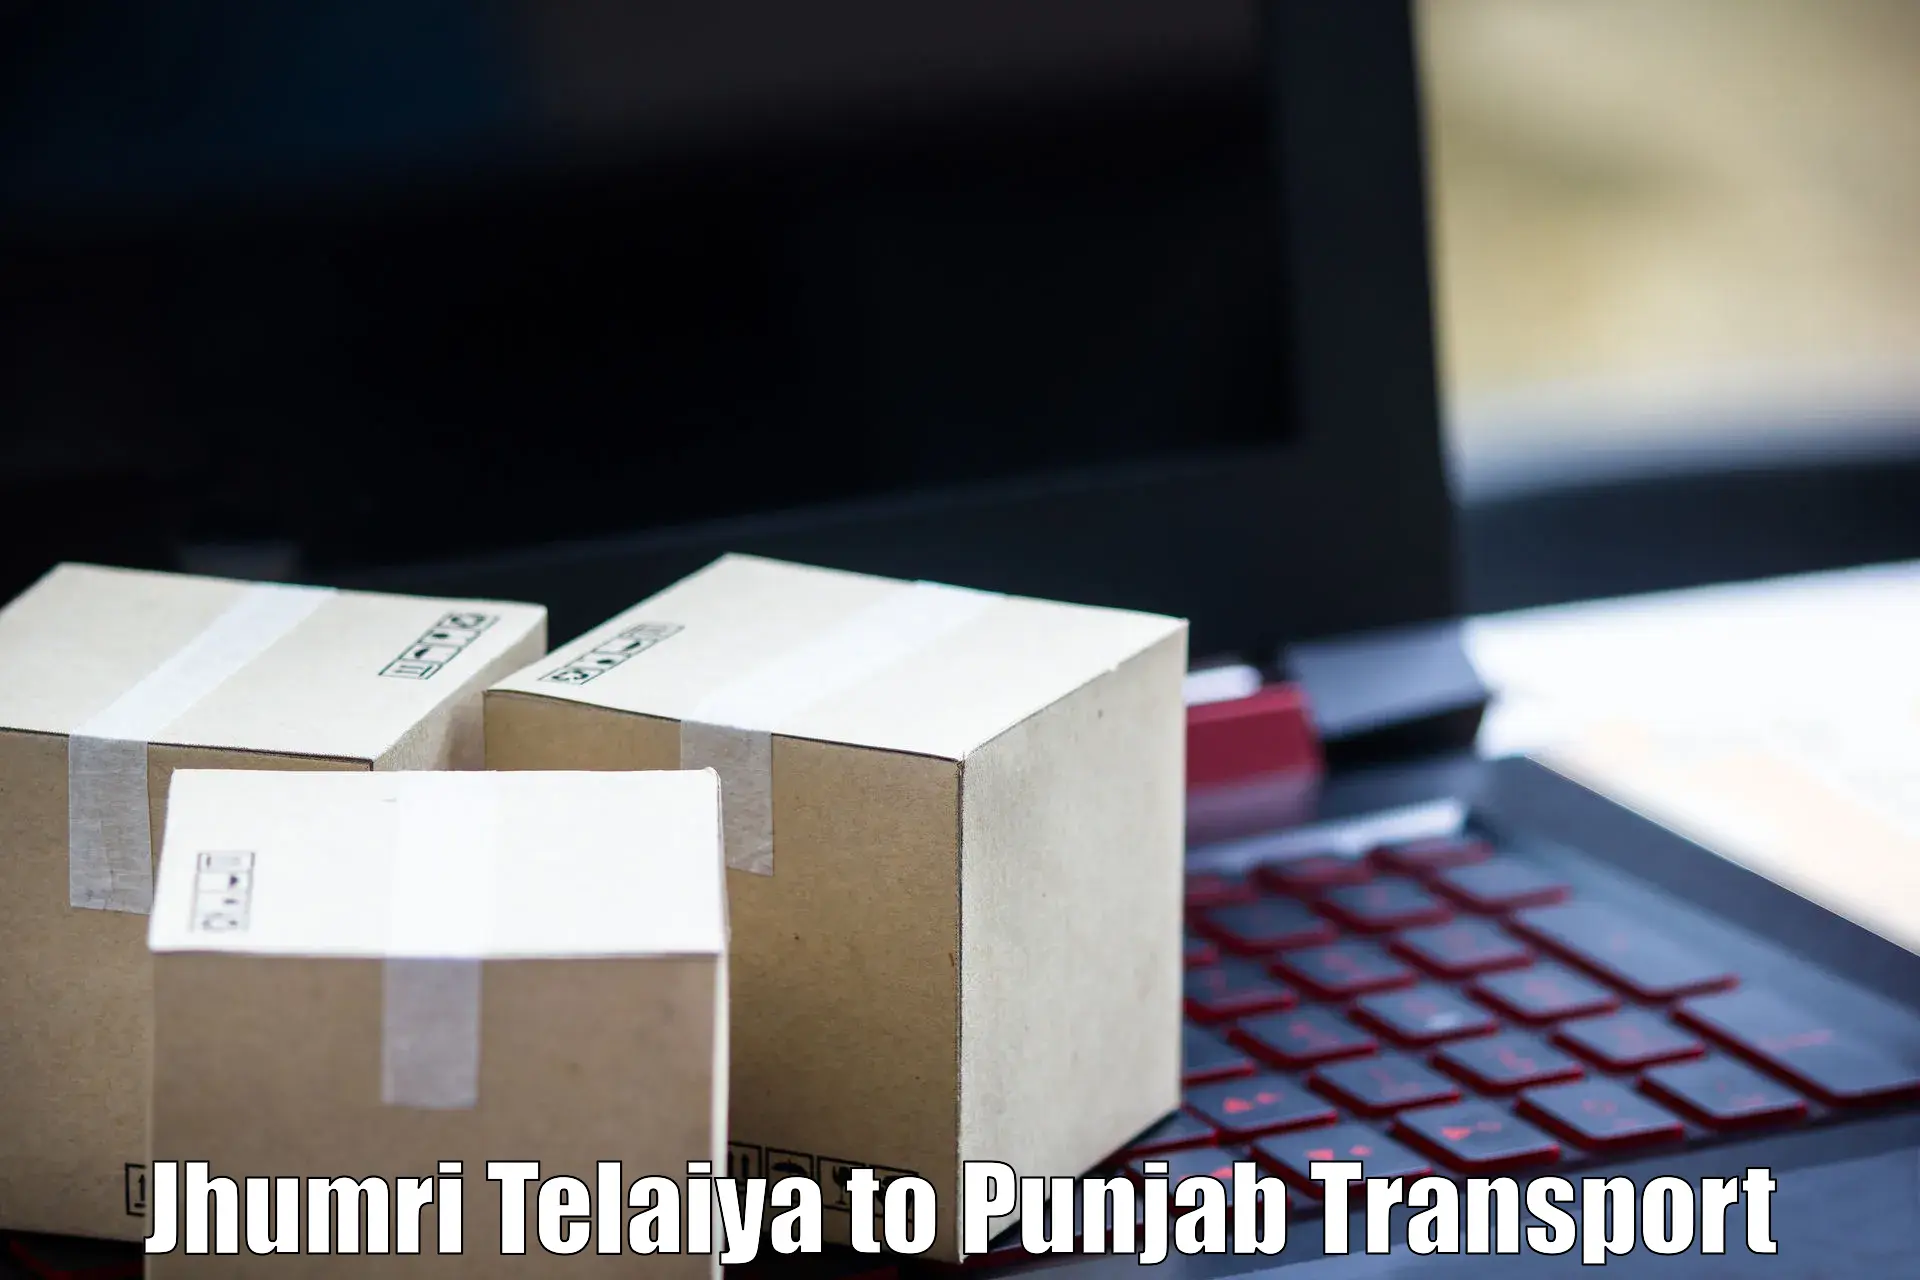 Road transport services Jhumri Telaiya to Tarn Taran Sahib